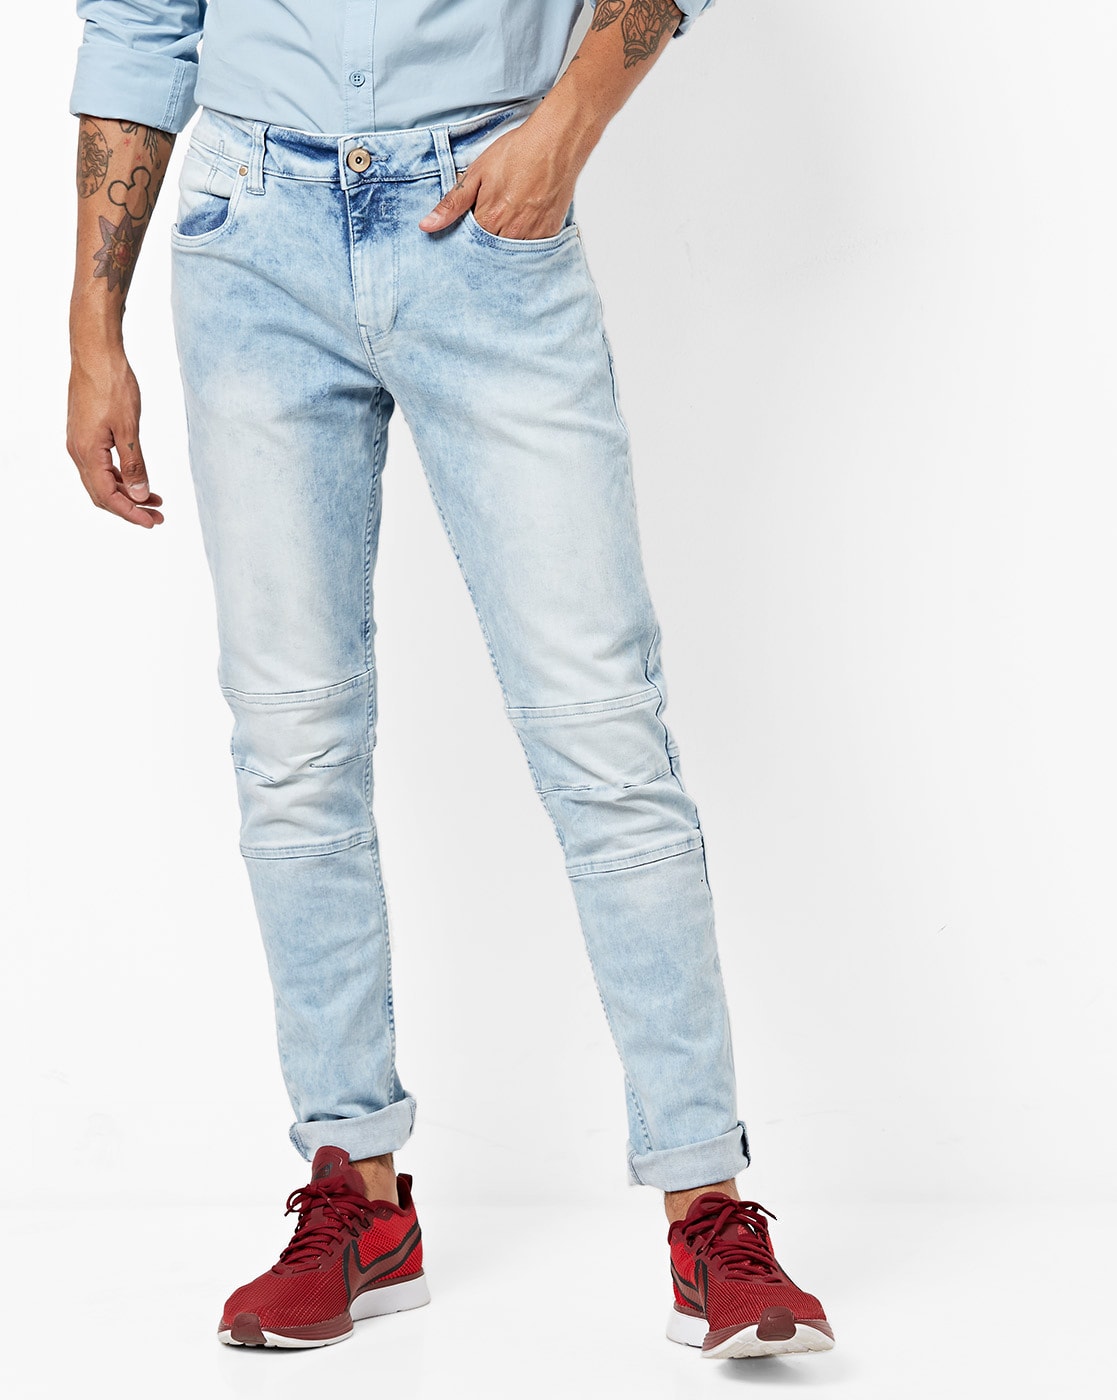 sheltr jeans